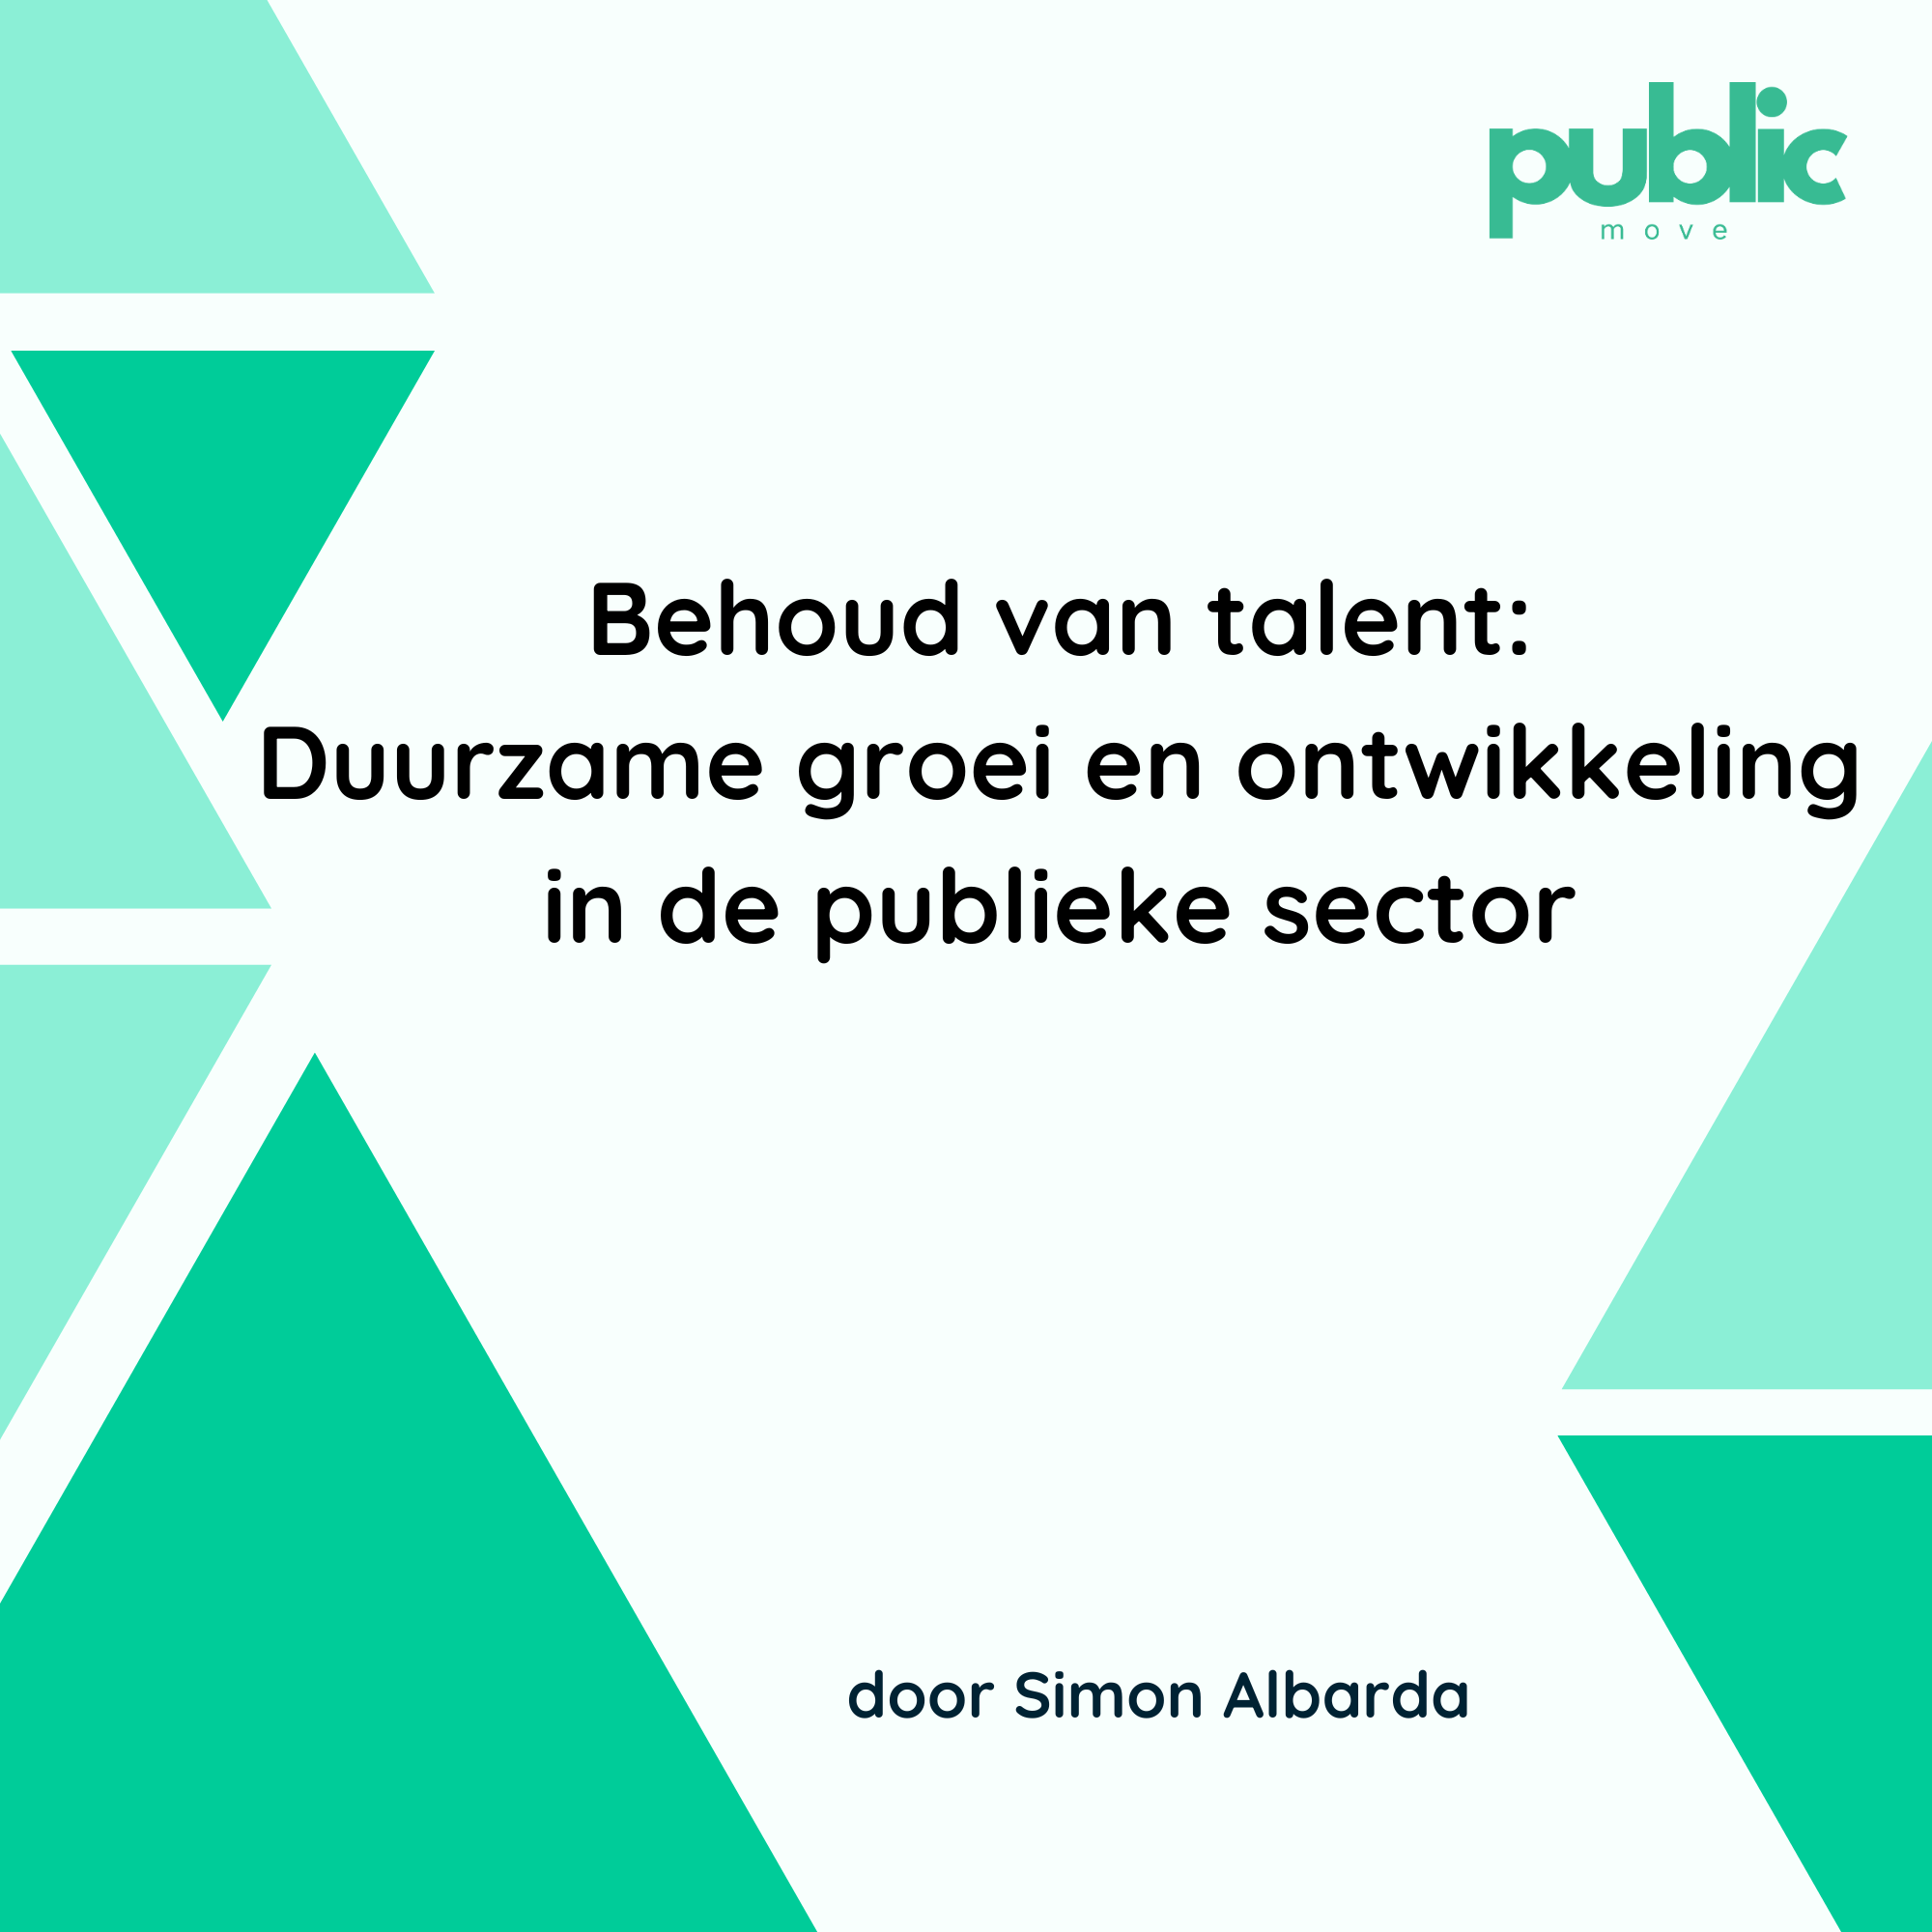 Behoud van talent: Duurzame groei en ontwikkeling in de publieke sector.